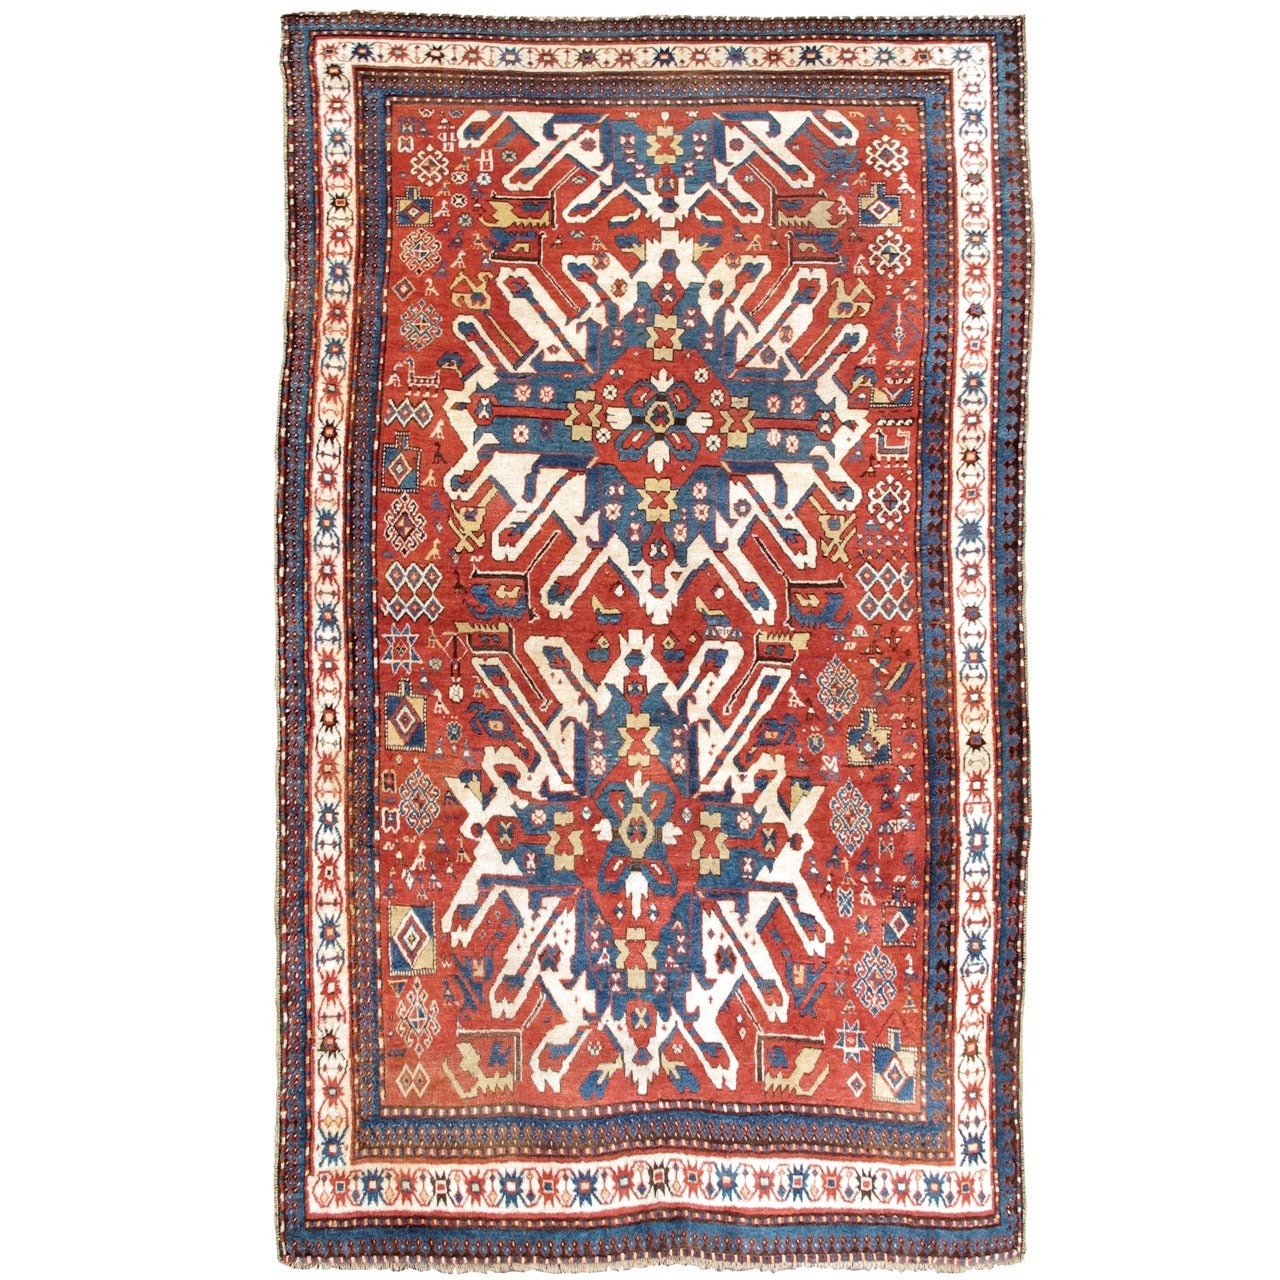 Roter und blauer Adler-Karabagh-Teppich aus dem 19. Jahrhundert